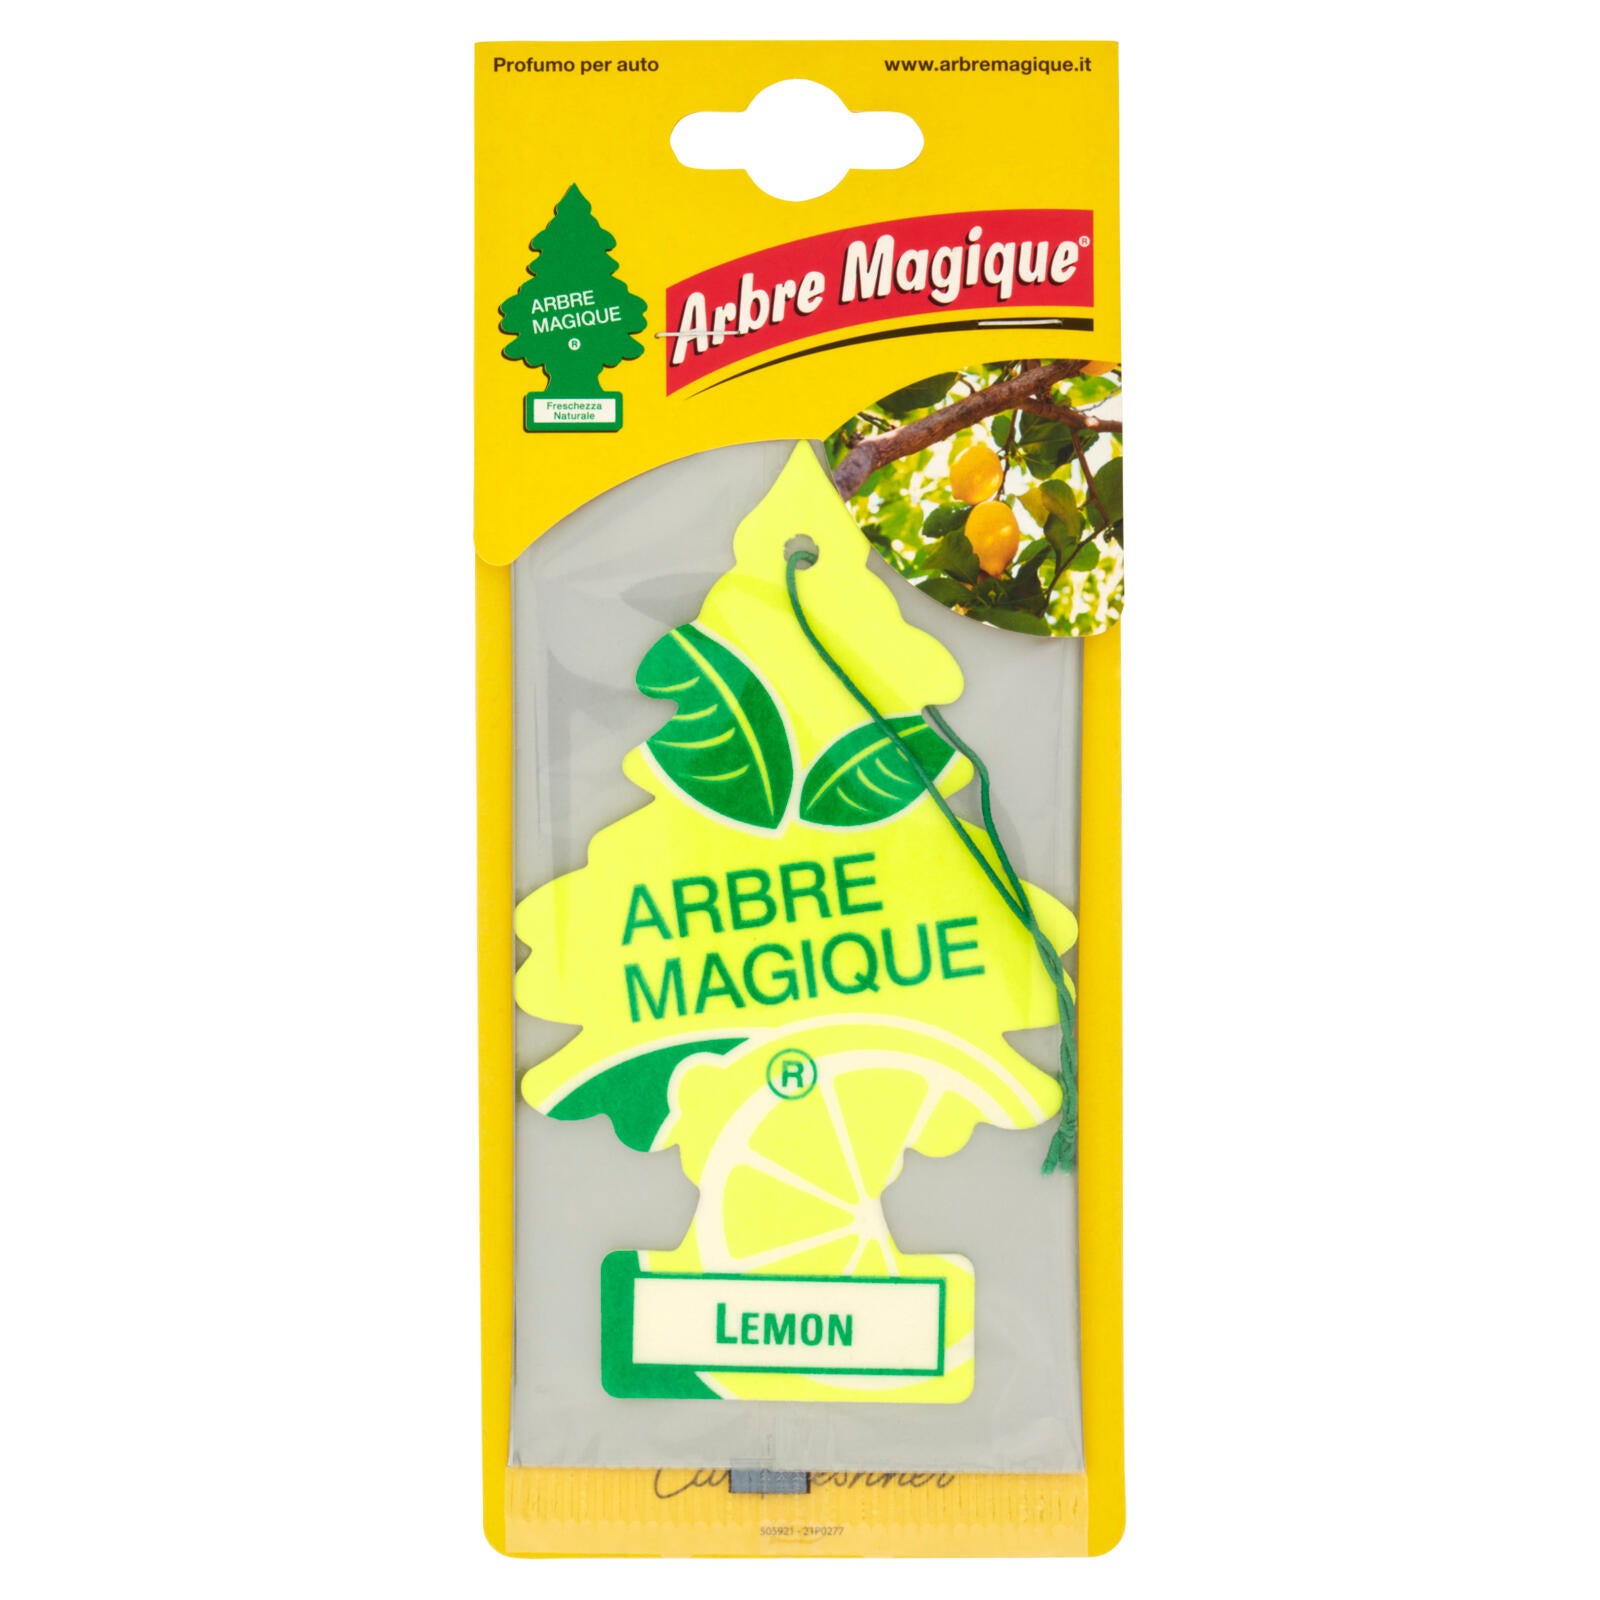 Arbre Magique Lemon 5 g ->